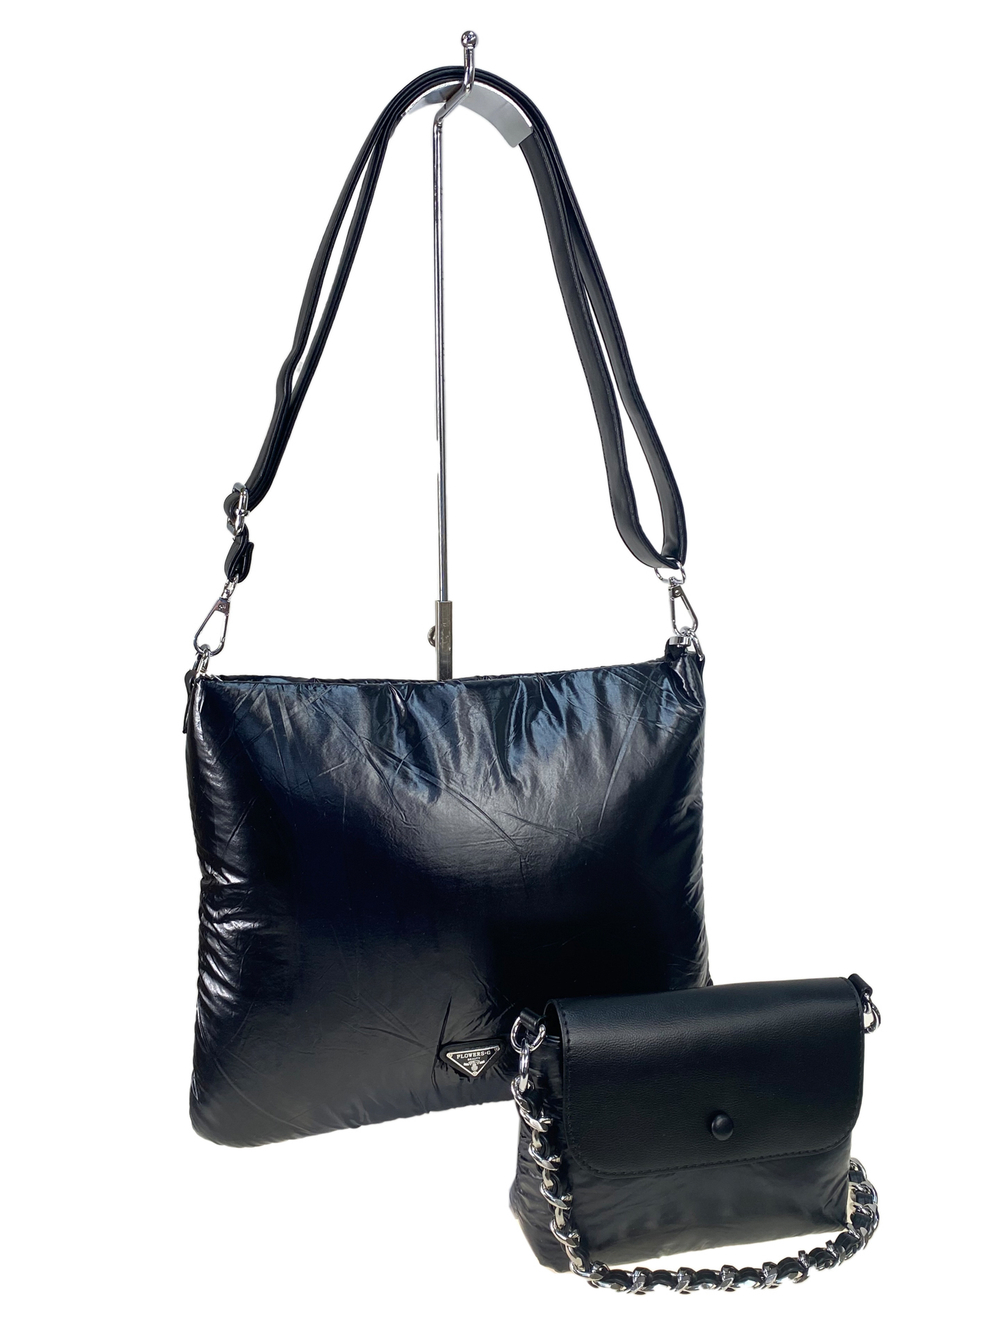 Cтильная женская сумка-шоппер из водоотталкивающей ткани, цвет черный